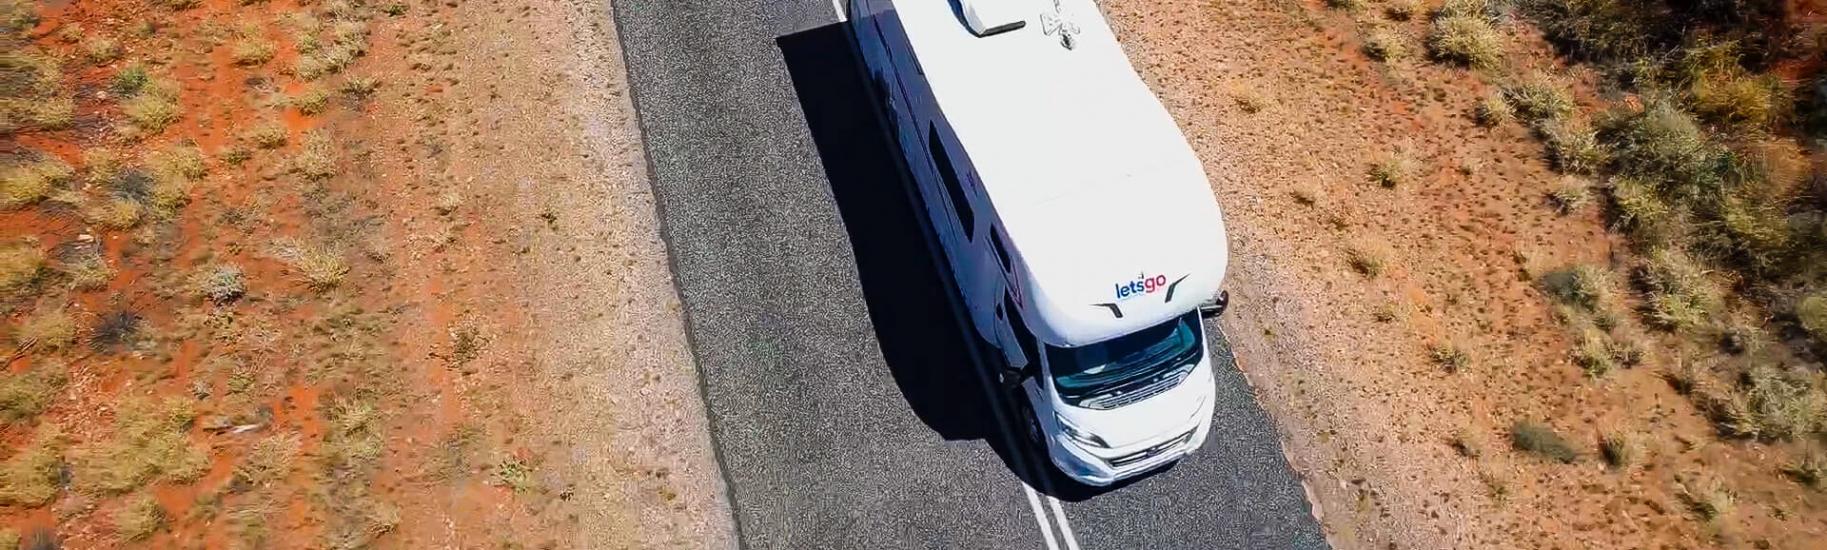 Let's Go Motorhome auf einer Straße im australischen Outback